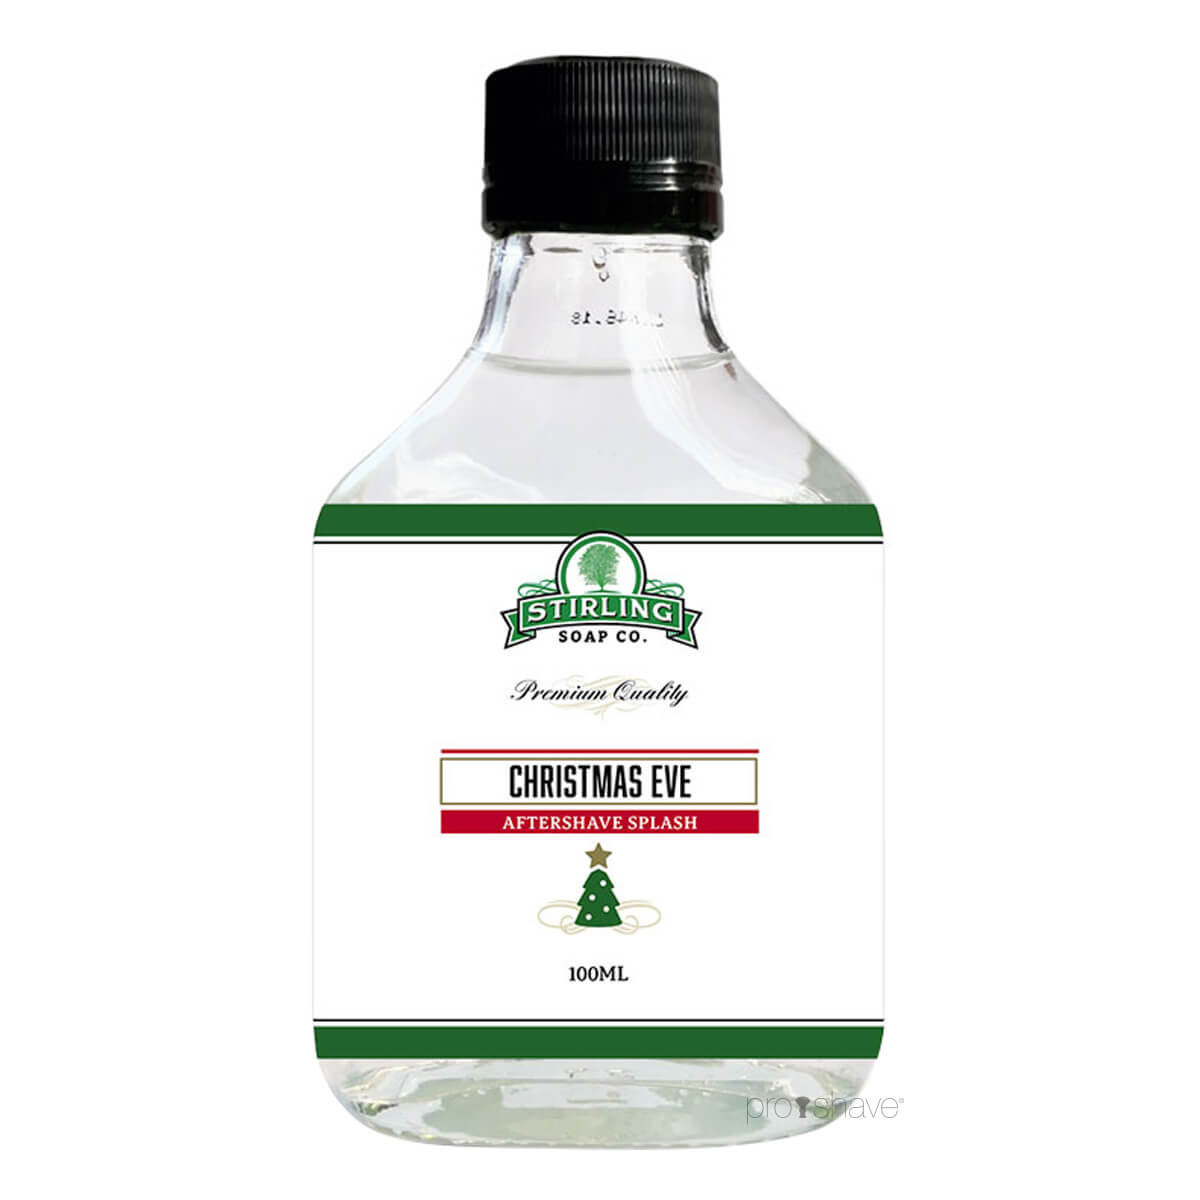 Stirling Soap Co. Aftershave Splash, Christmas Eve, 100 ml.